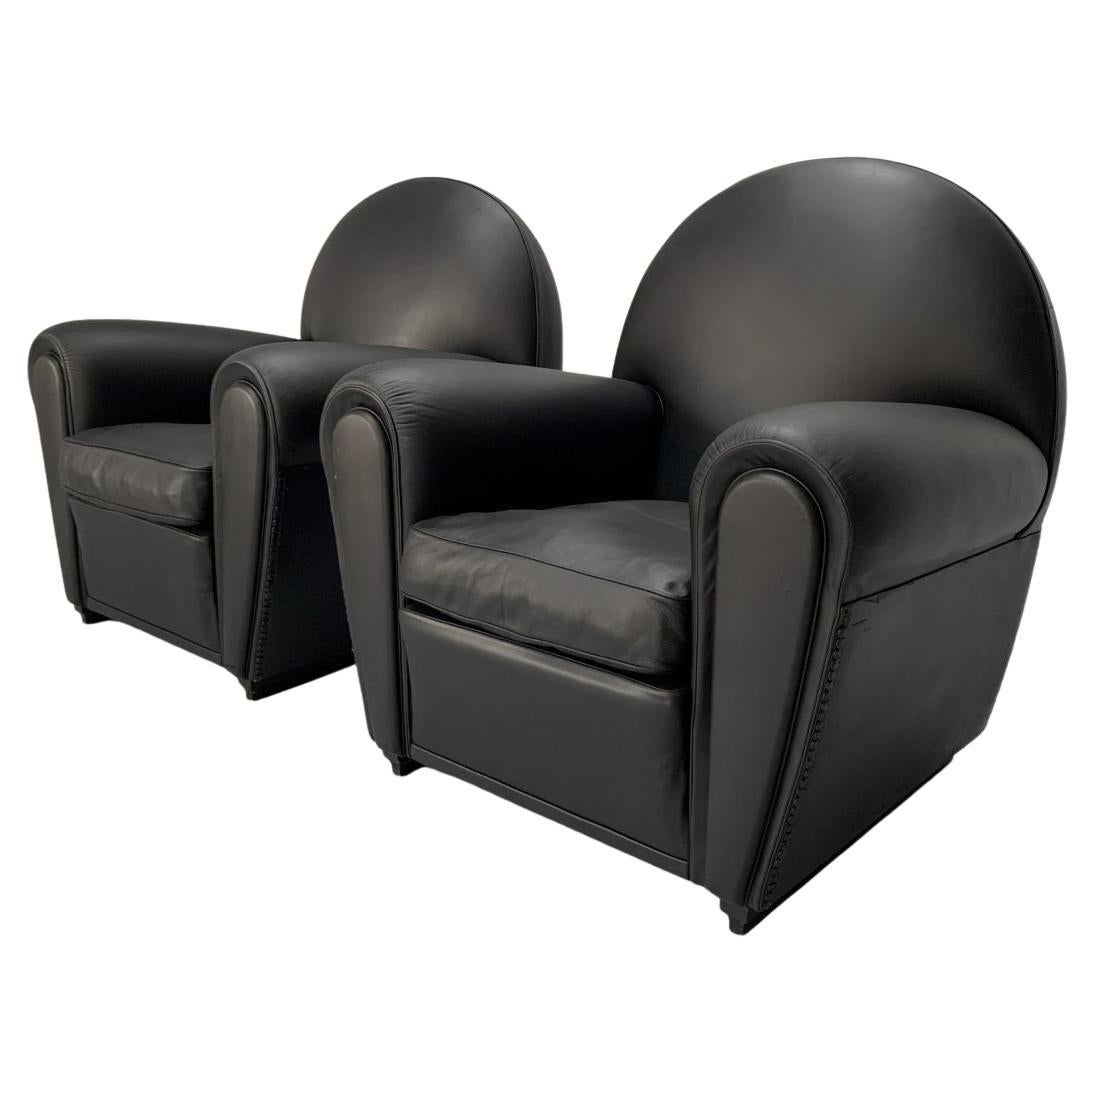 Pair of Poltrona Frau “Vanity Fair” Armchairs – In “Pelle Frau” Black Leather For Sale